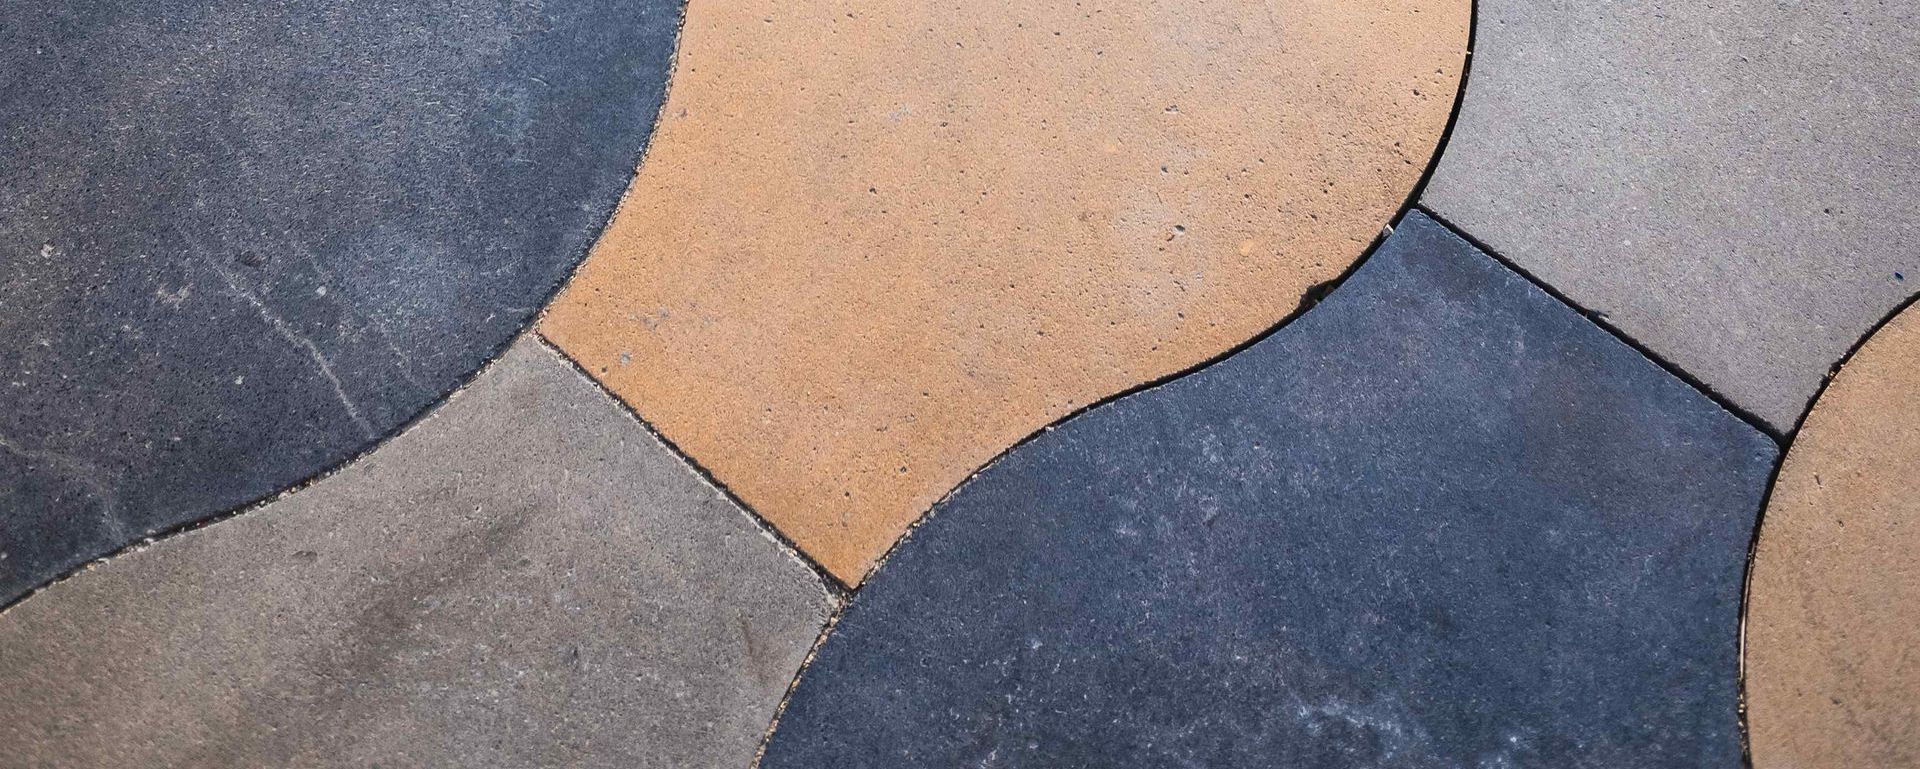 Decorative Concrete Floor Of Different Colors